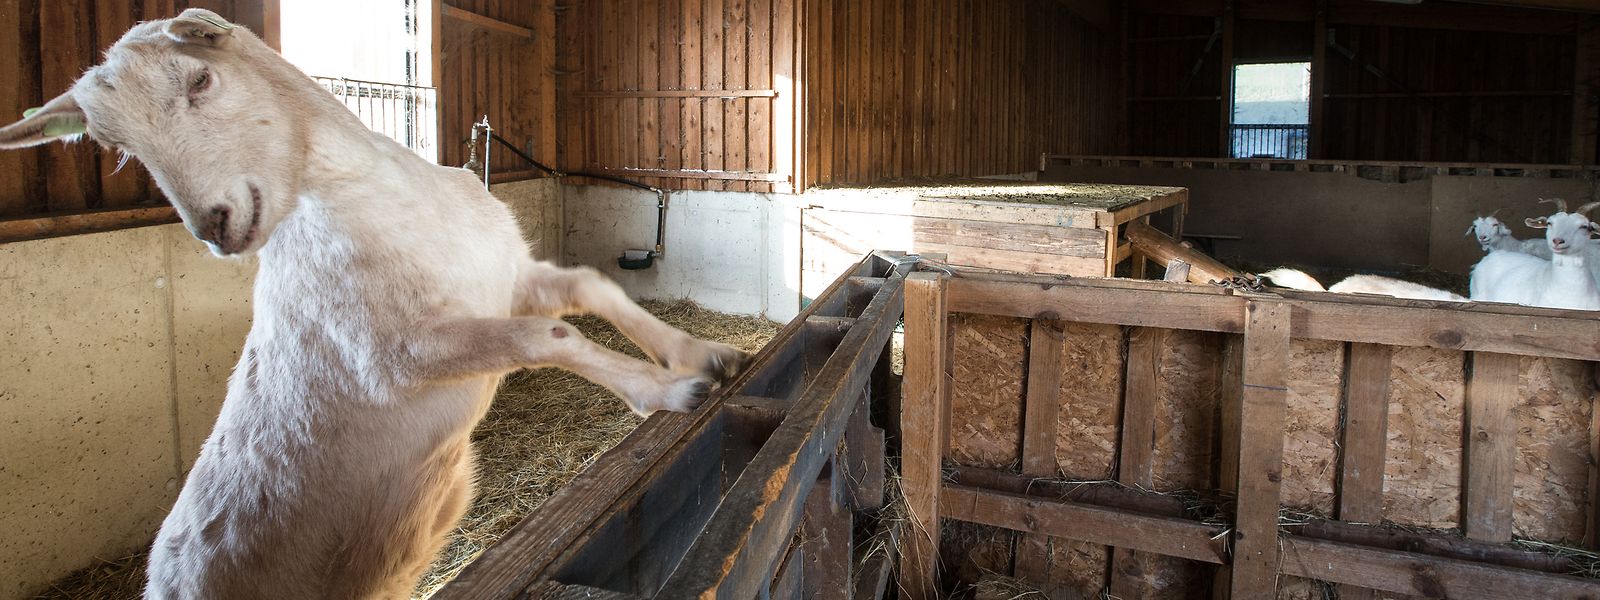 Wie wäre es mit einem Ausflug auf den Bauernhof? Ziegen streicheln und füttern inklusive.